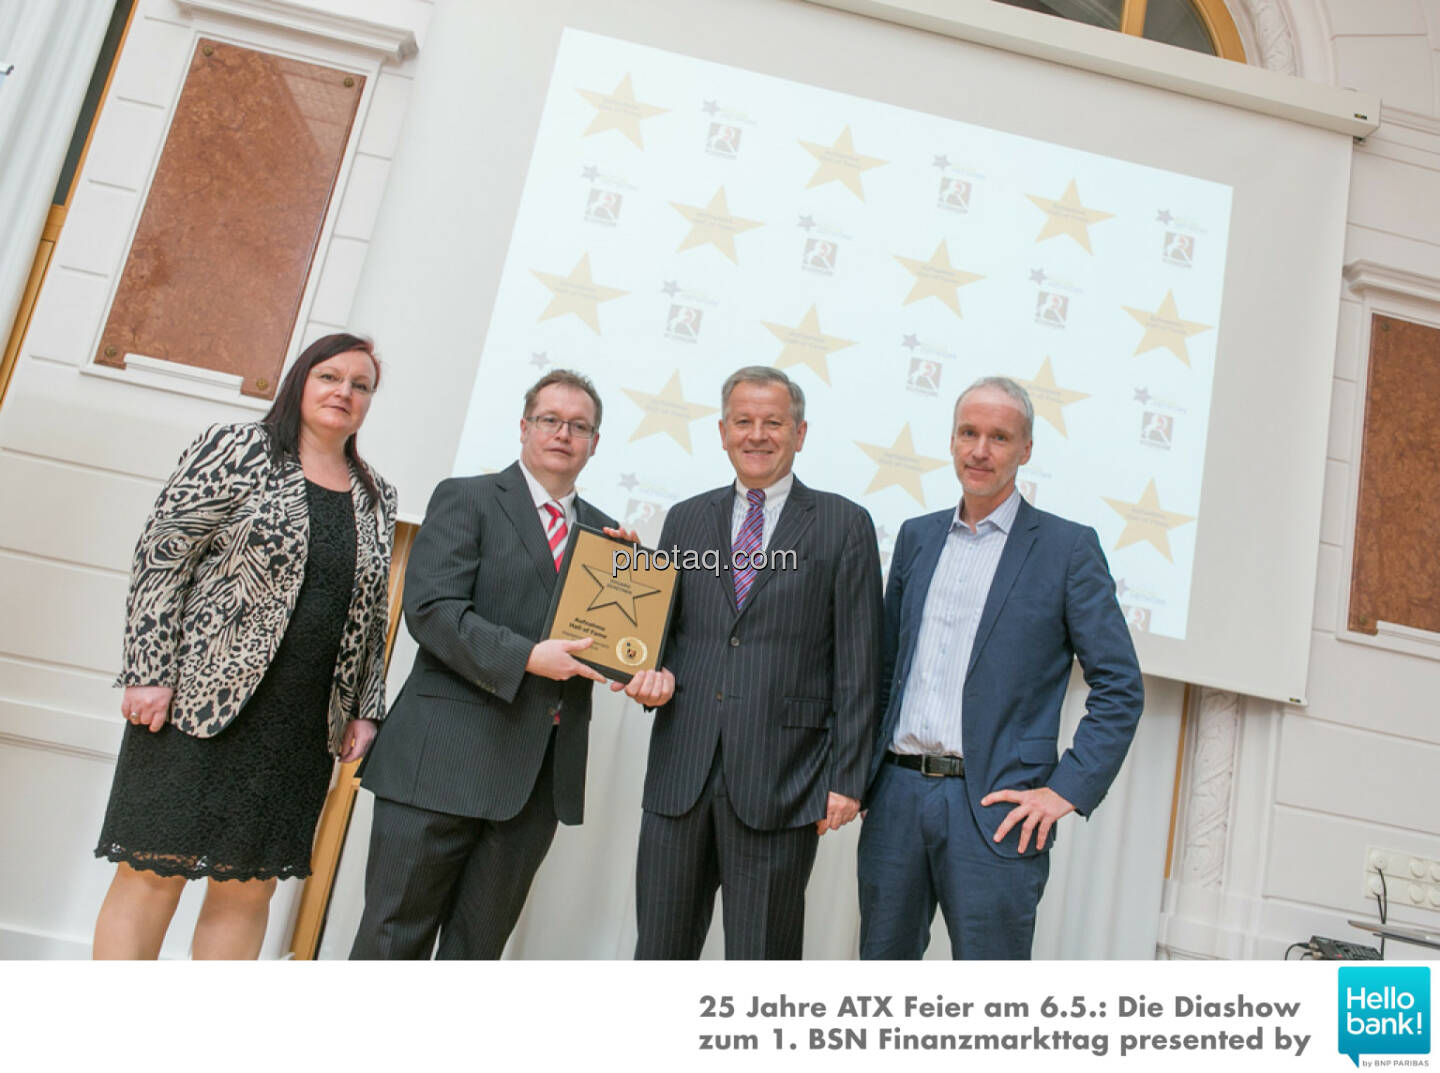 Eduard Zehetner wird in die Hall of Fame (Class of 2016) des Wiener Kapitalmarkts aufgenommen: Yvette Rosinger, Gregor Rosinger, Eduard Zehetner, Christian Drastil http://boerse-social.com/hall-of-fame